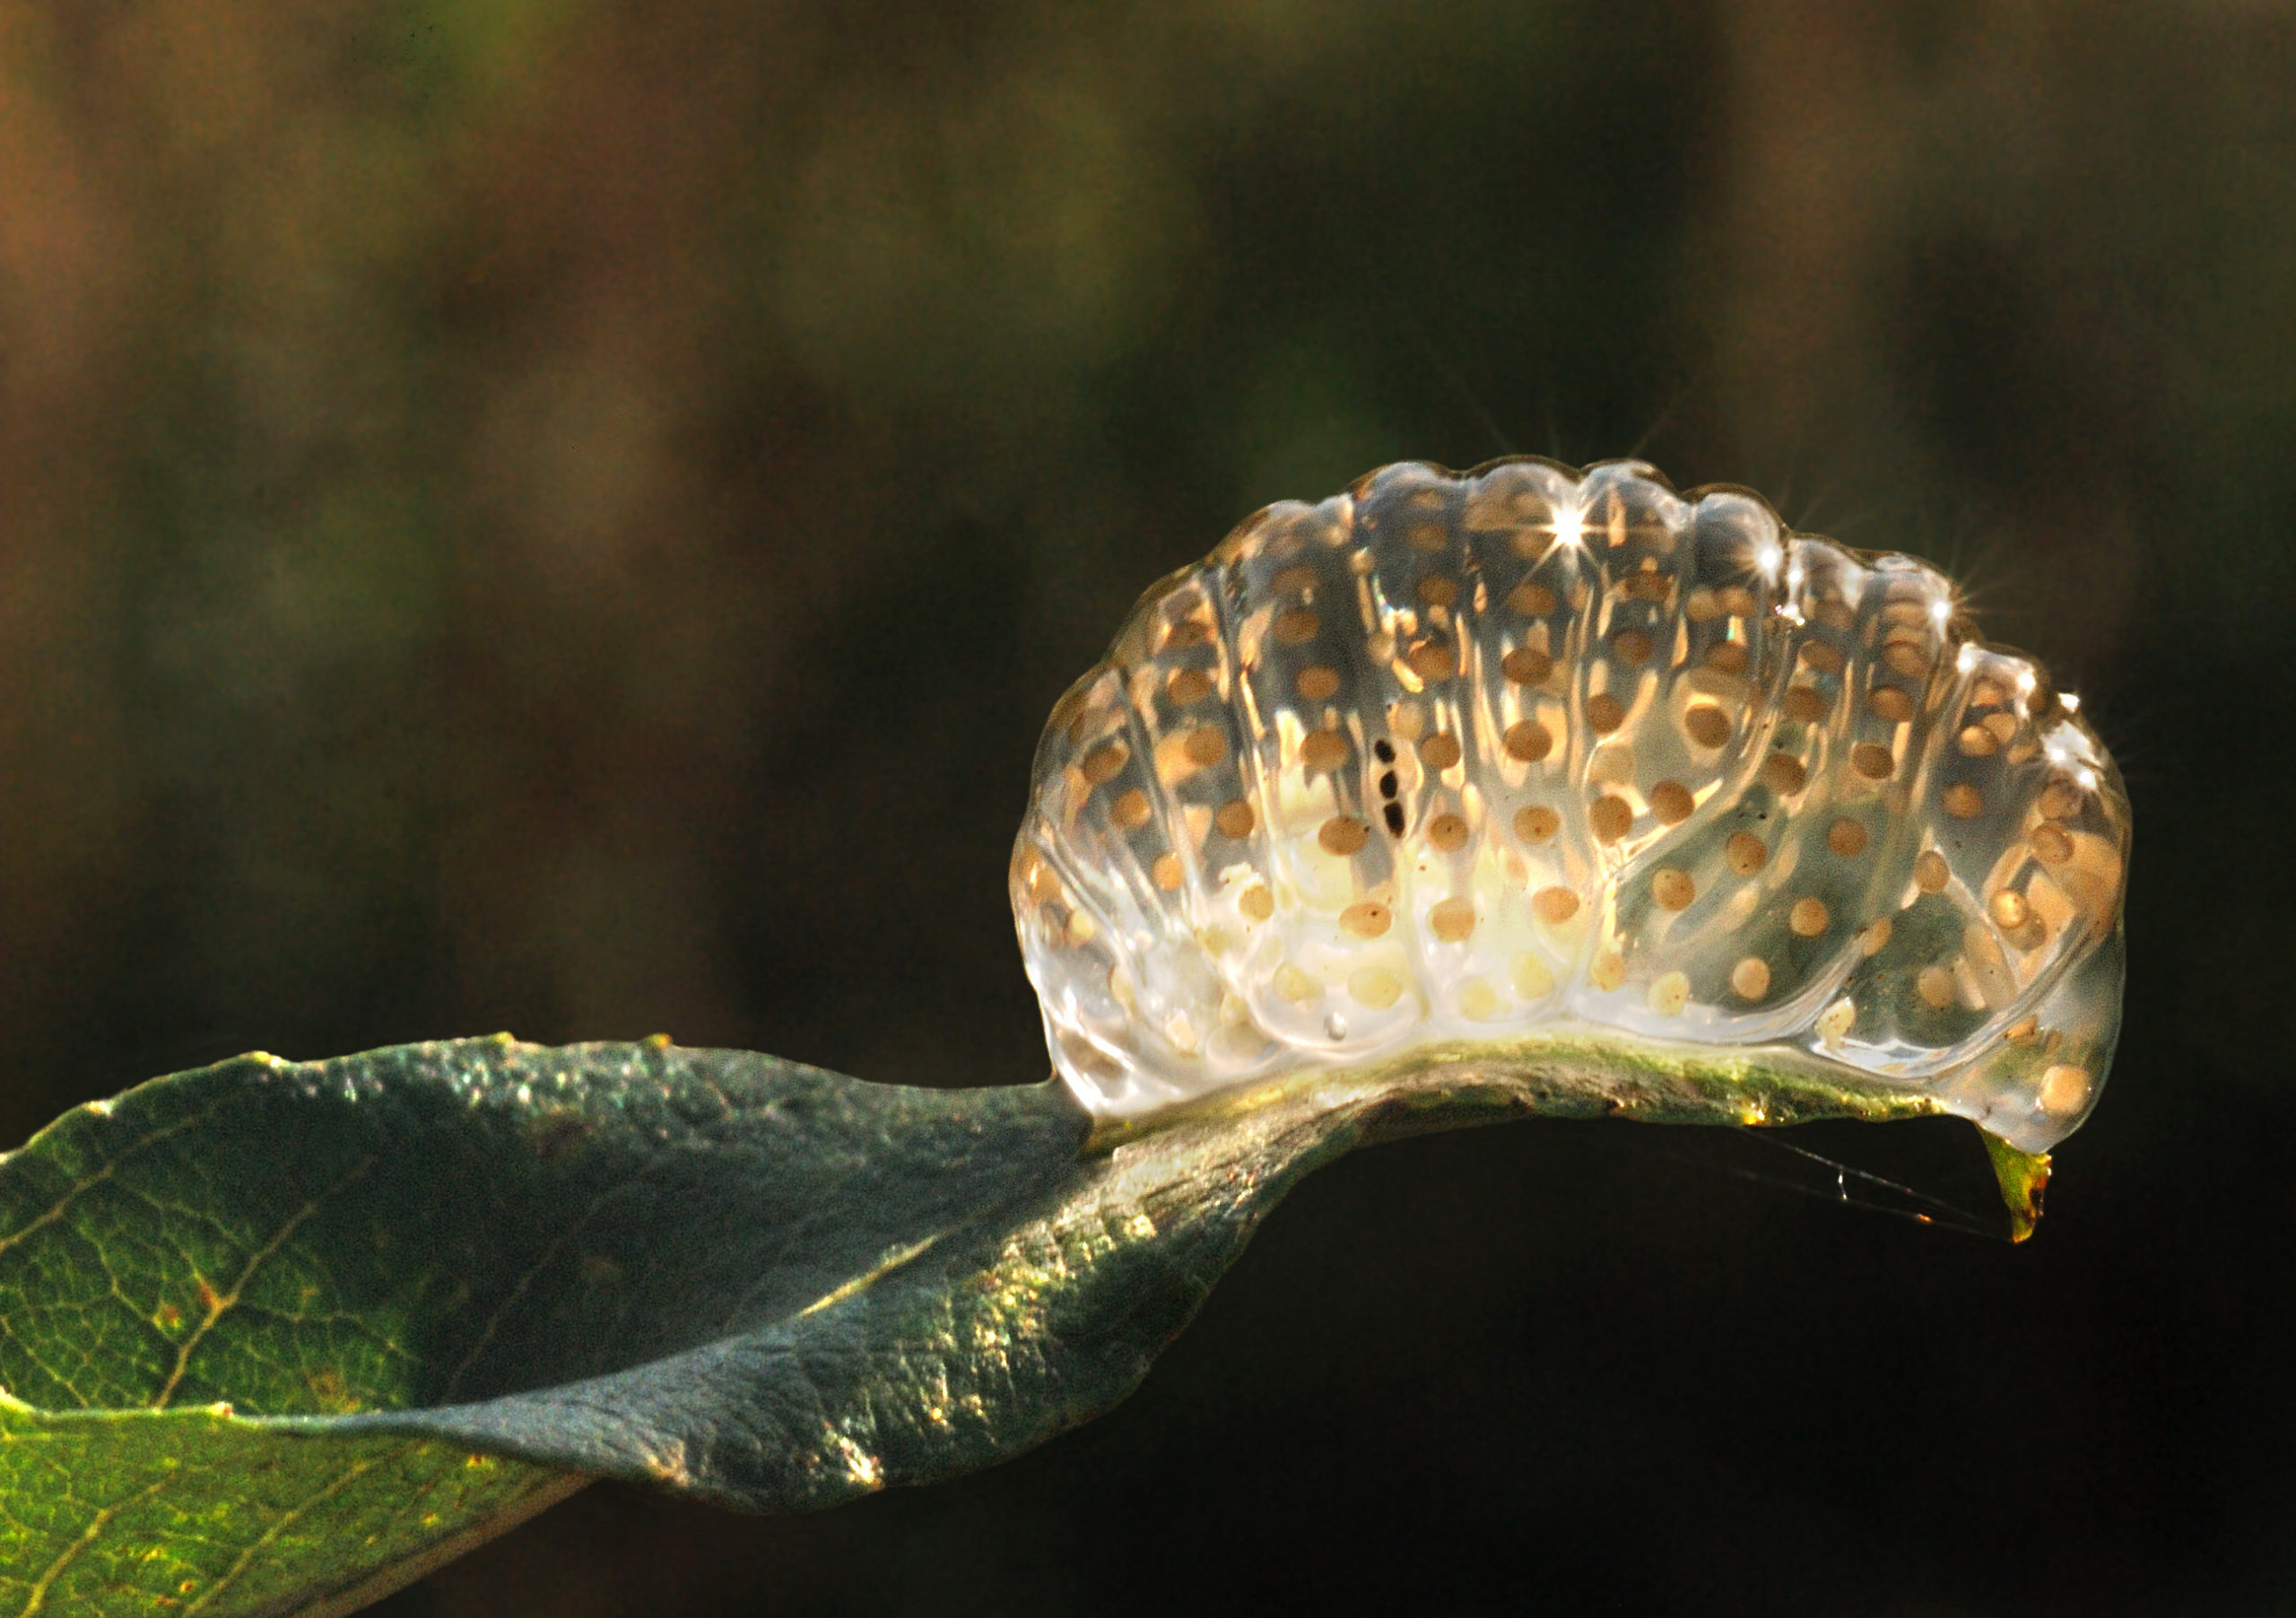 Caddis fly egg mass on leaf overhanging water